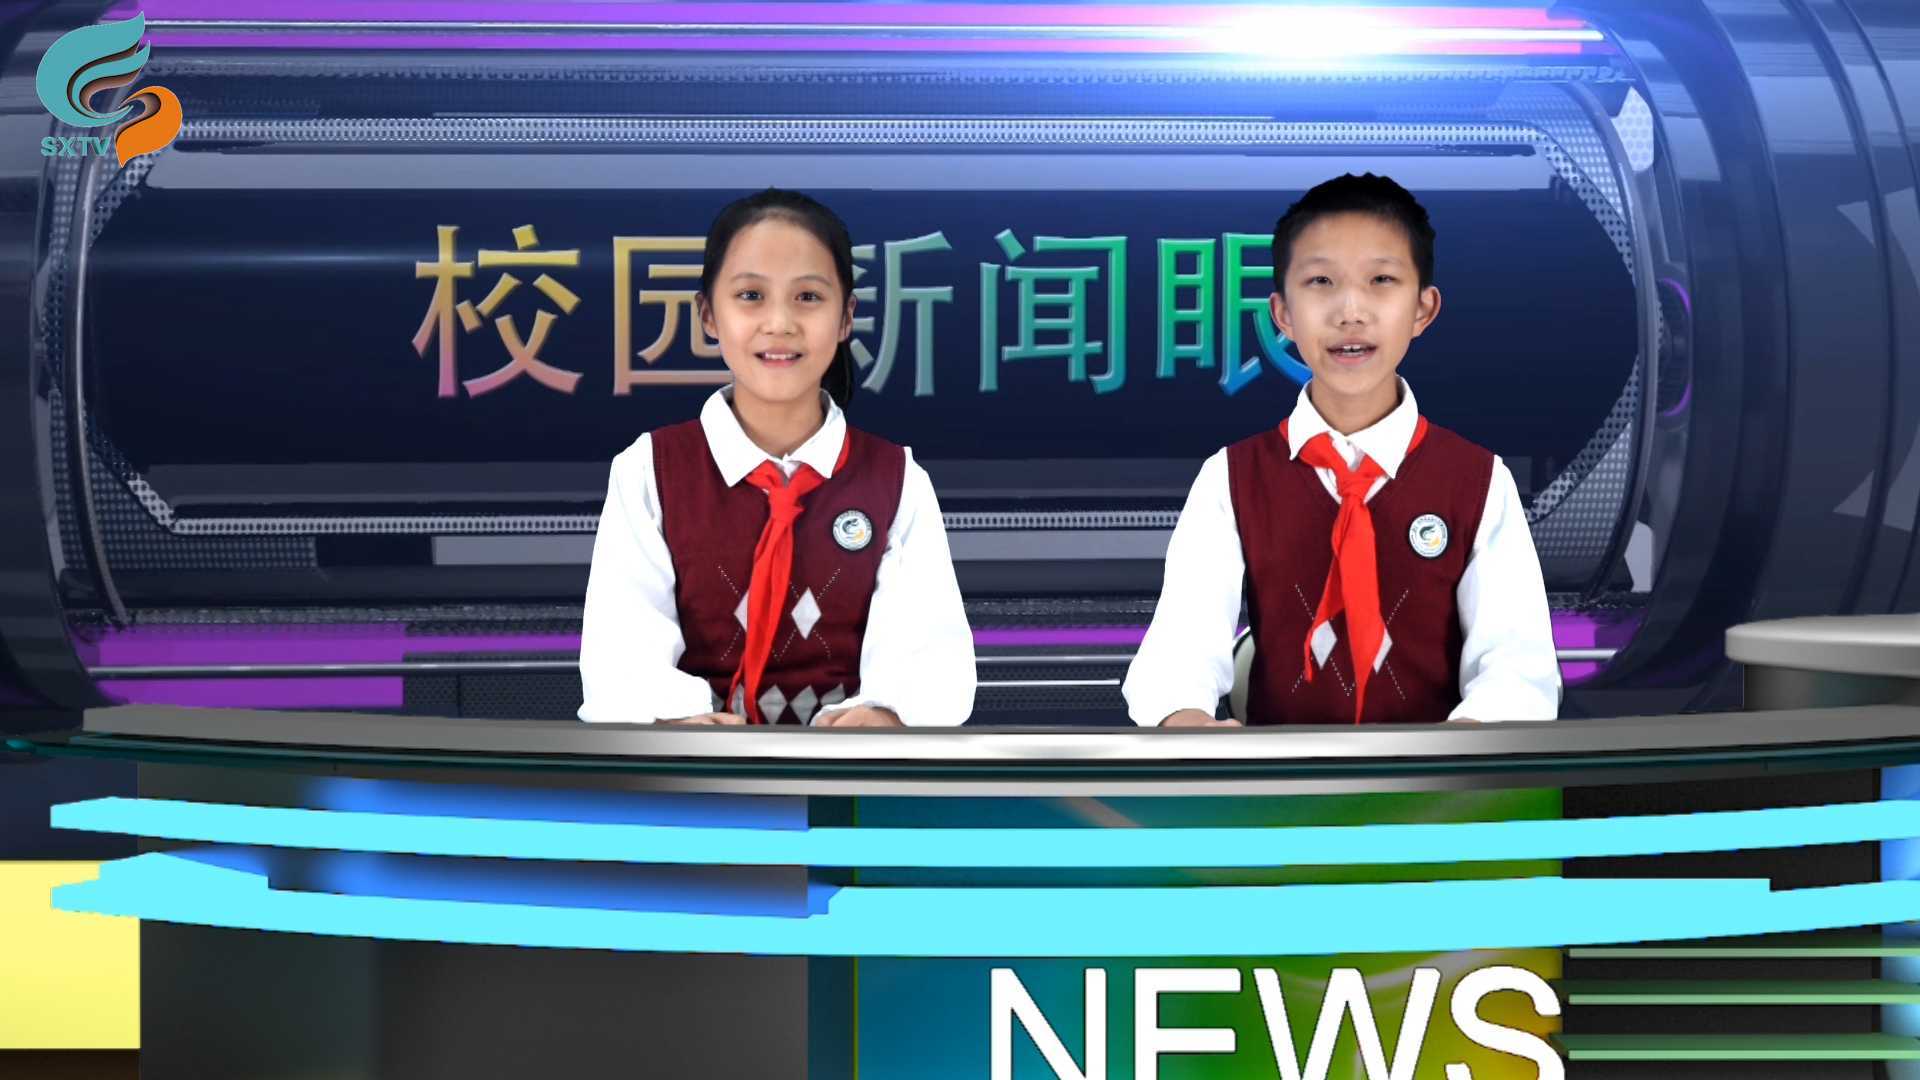 2021年10月松阳县实验小学集团学校校园电视台节目